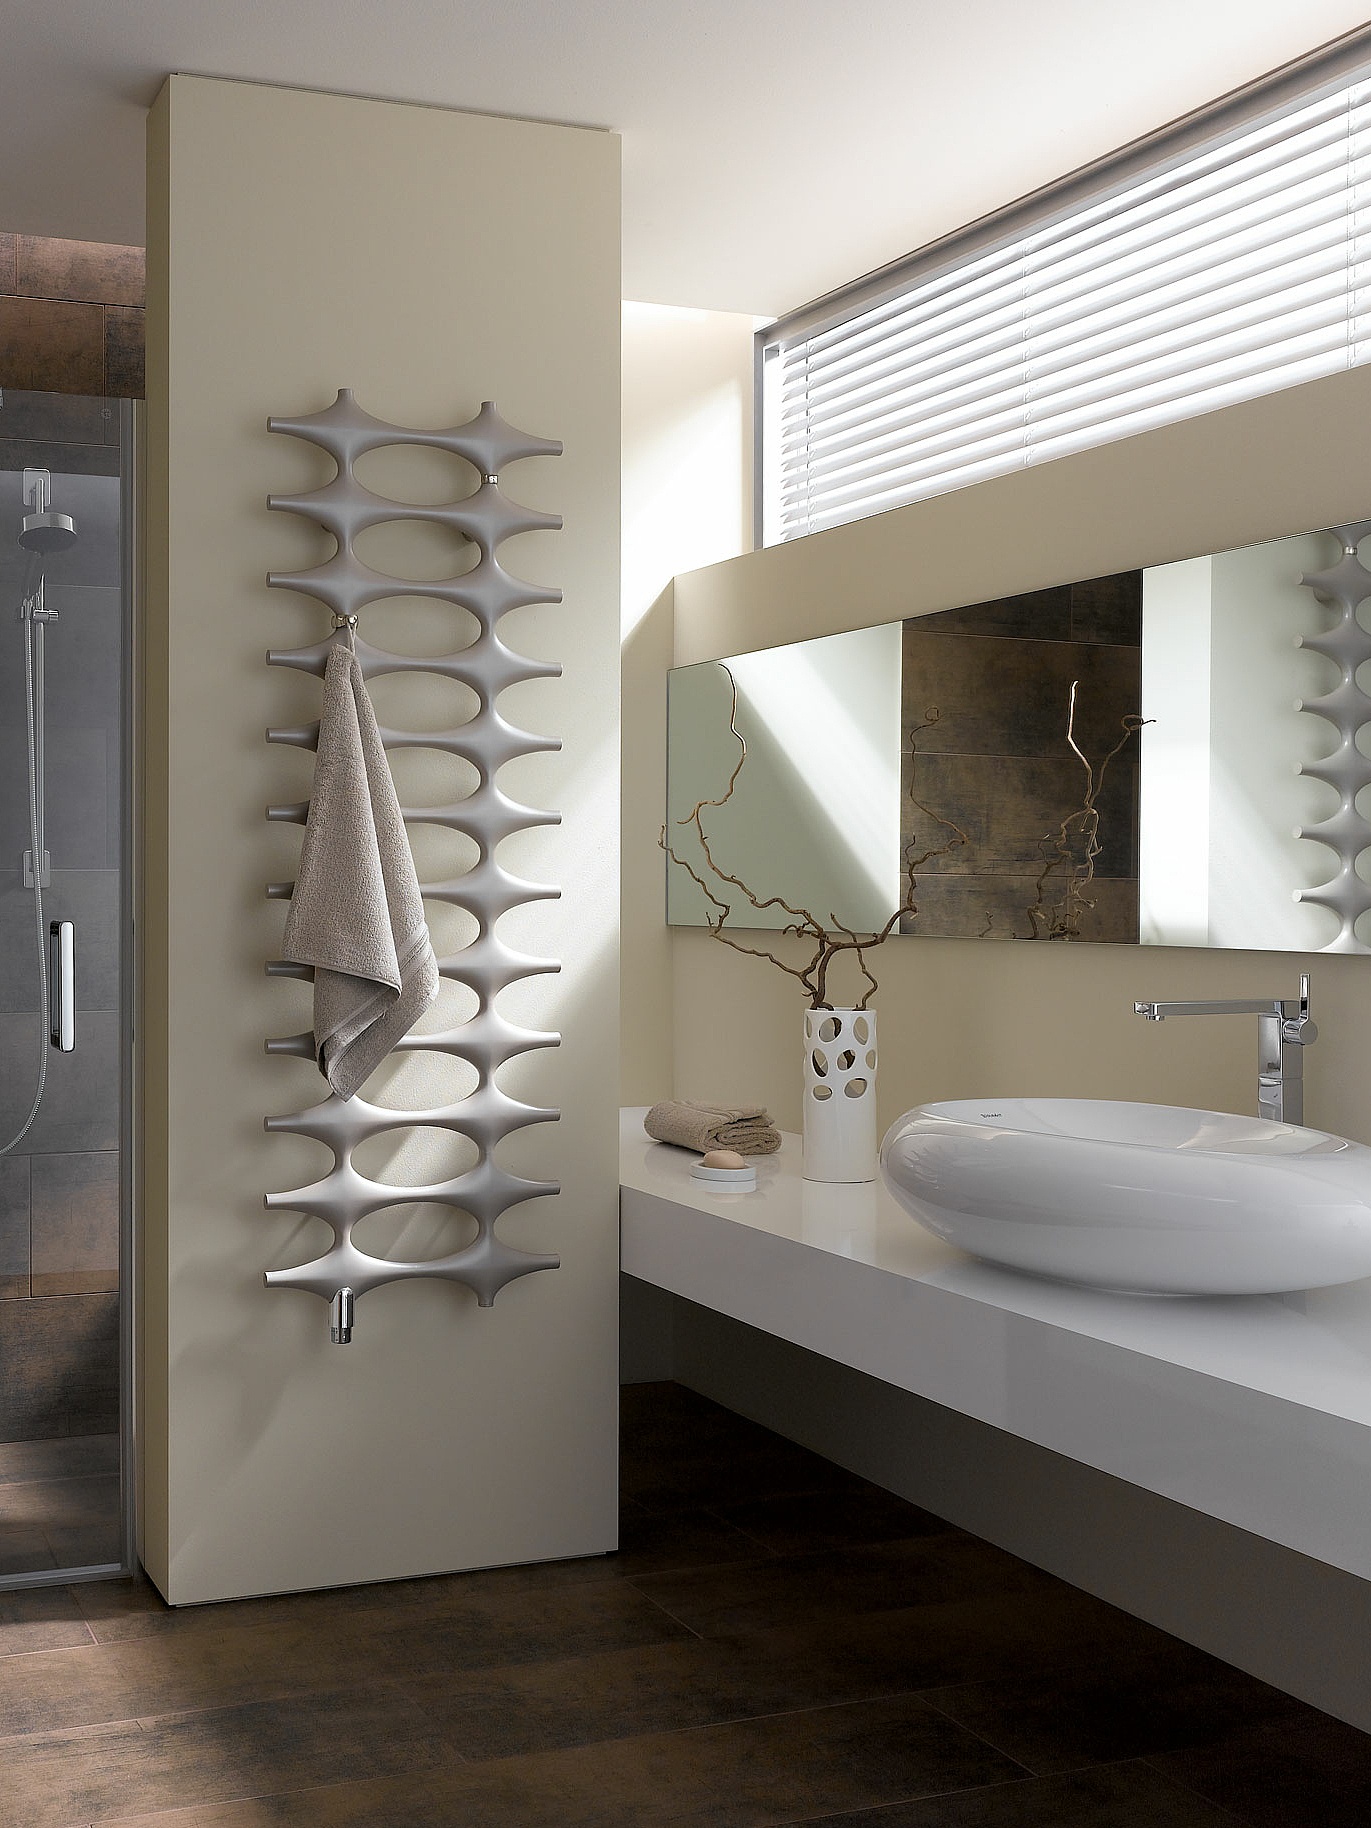 Kermi Ideos design and bathroom radiators featuring a unique design.